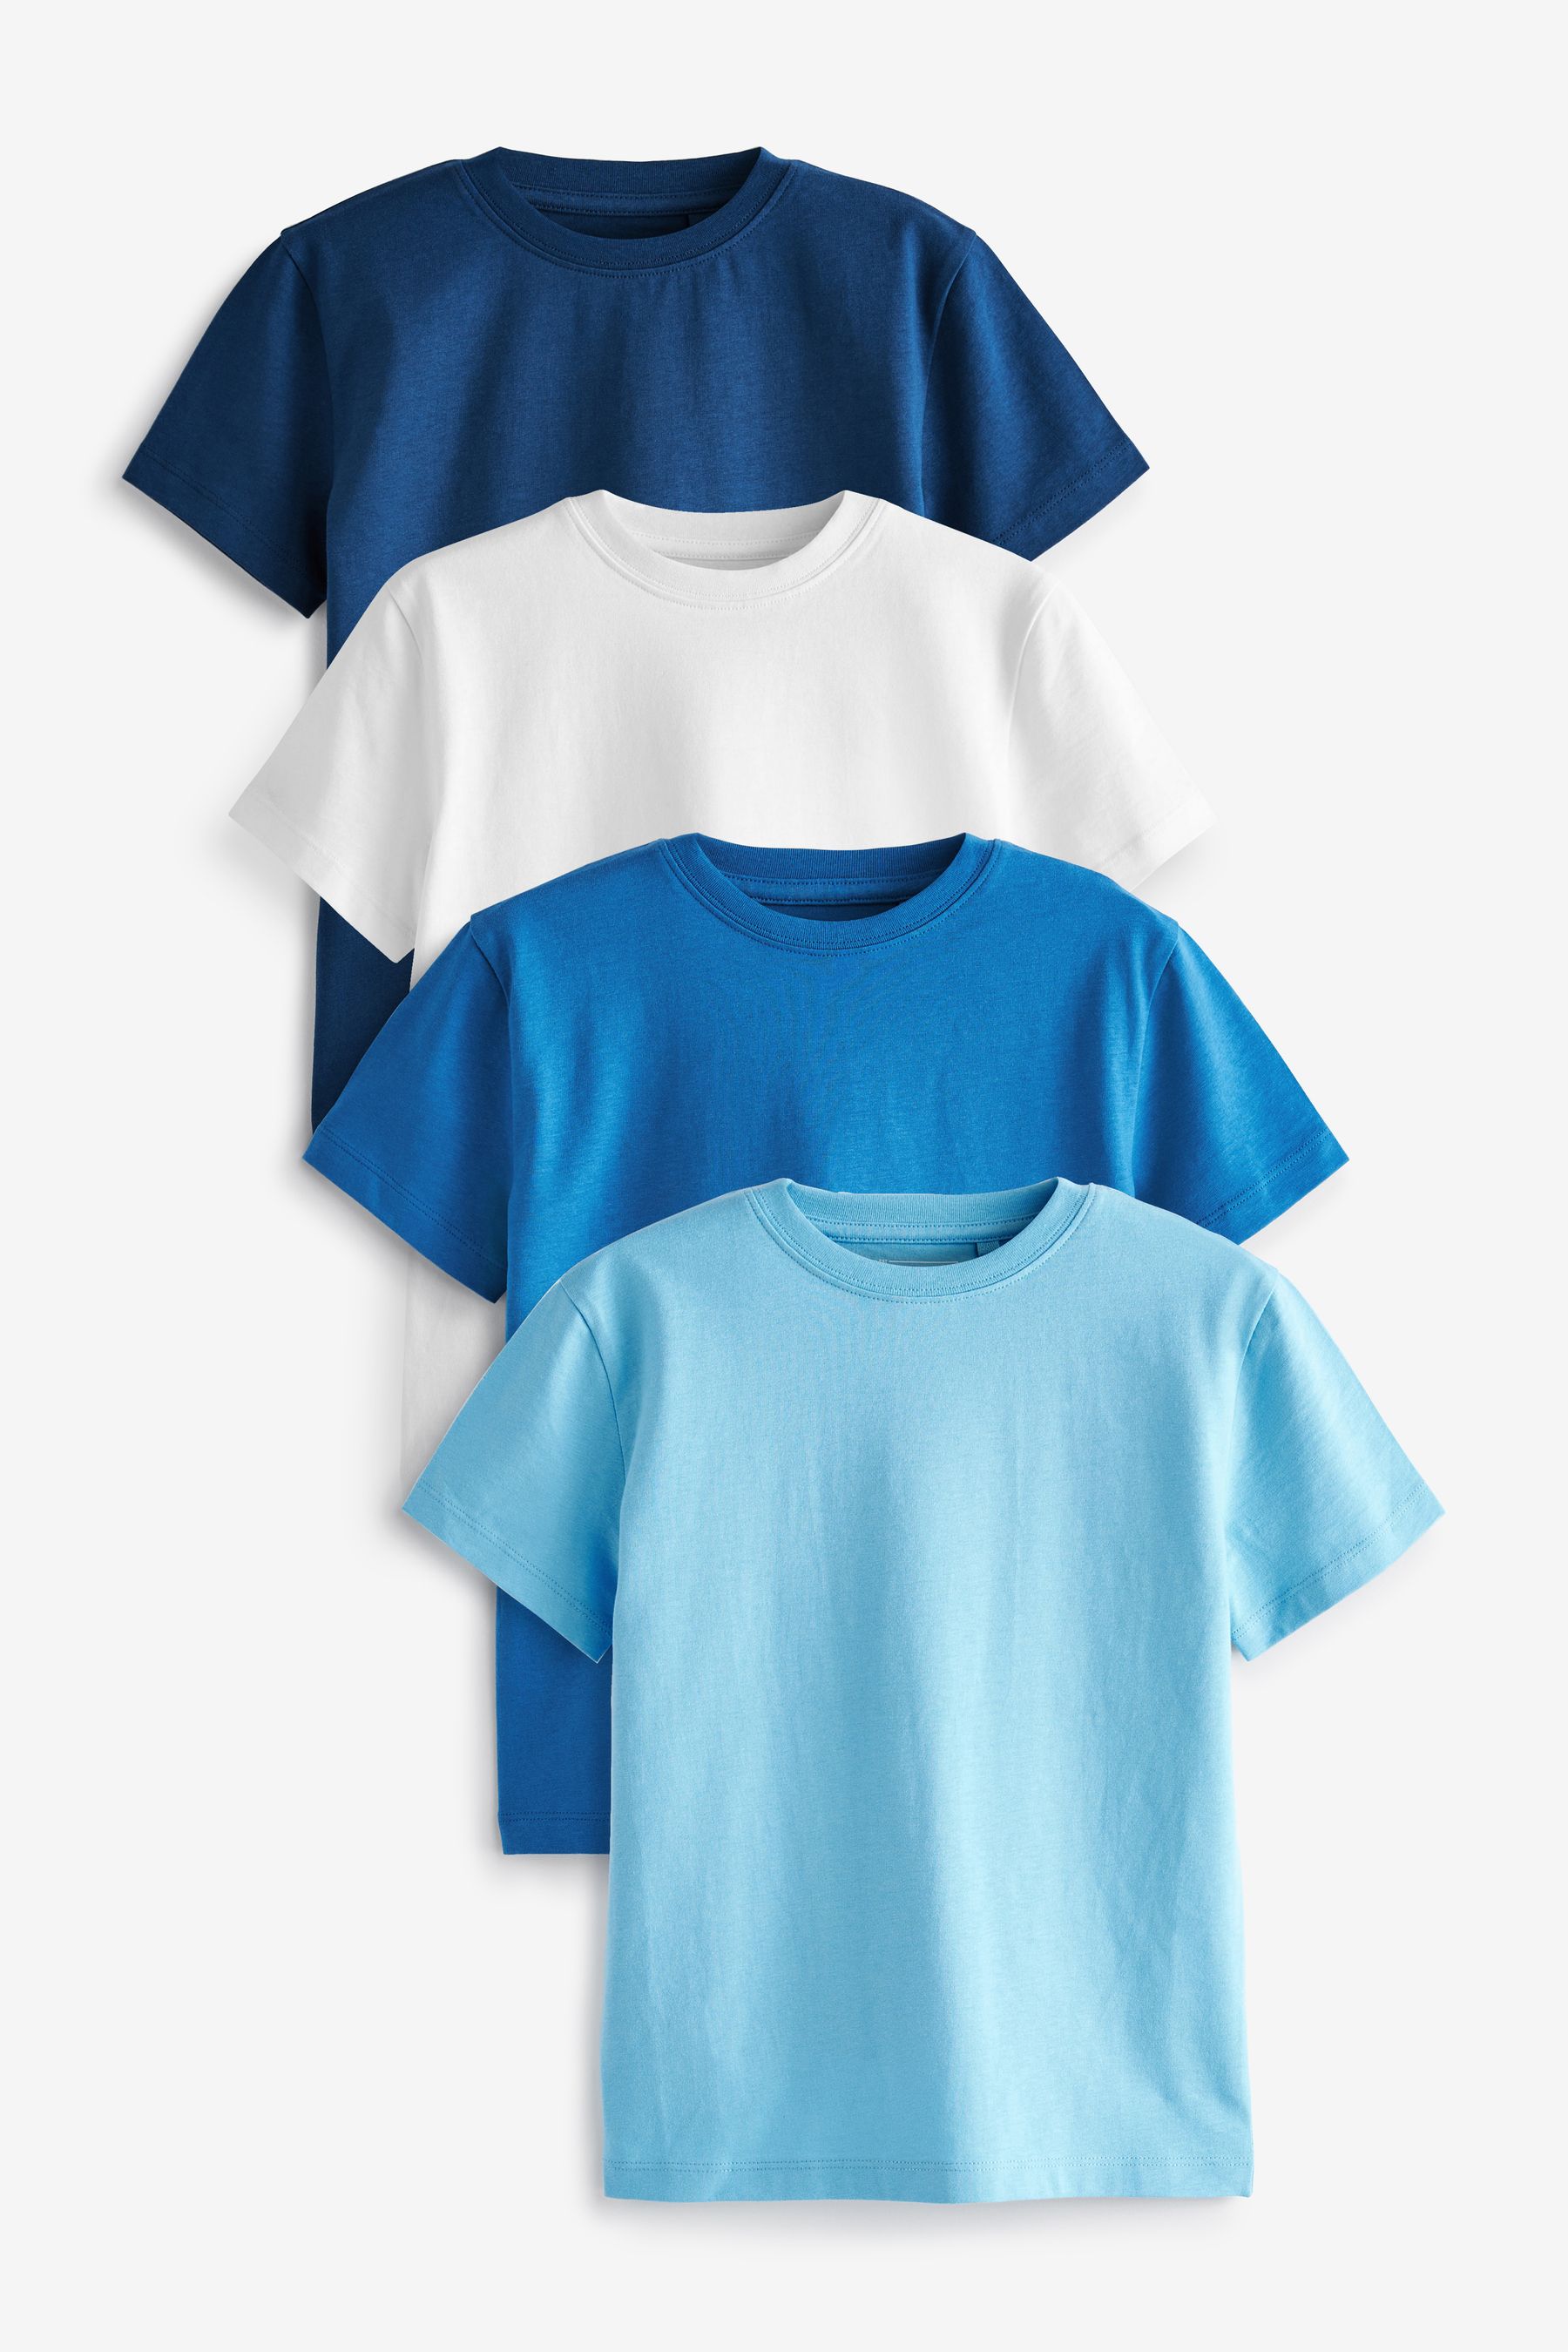 Комплект из 4 футболок с короткими рукавами Next, синий комплект из двух футболок с короткими рукавами 4 года 102 см синий